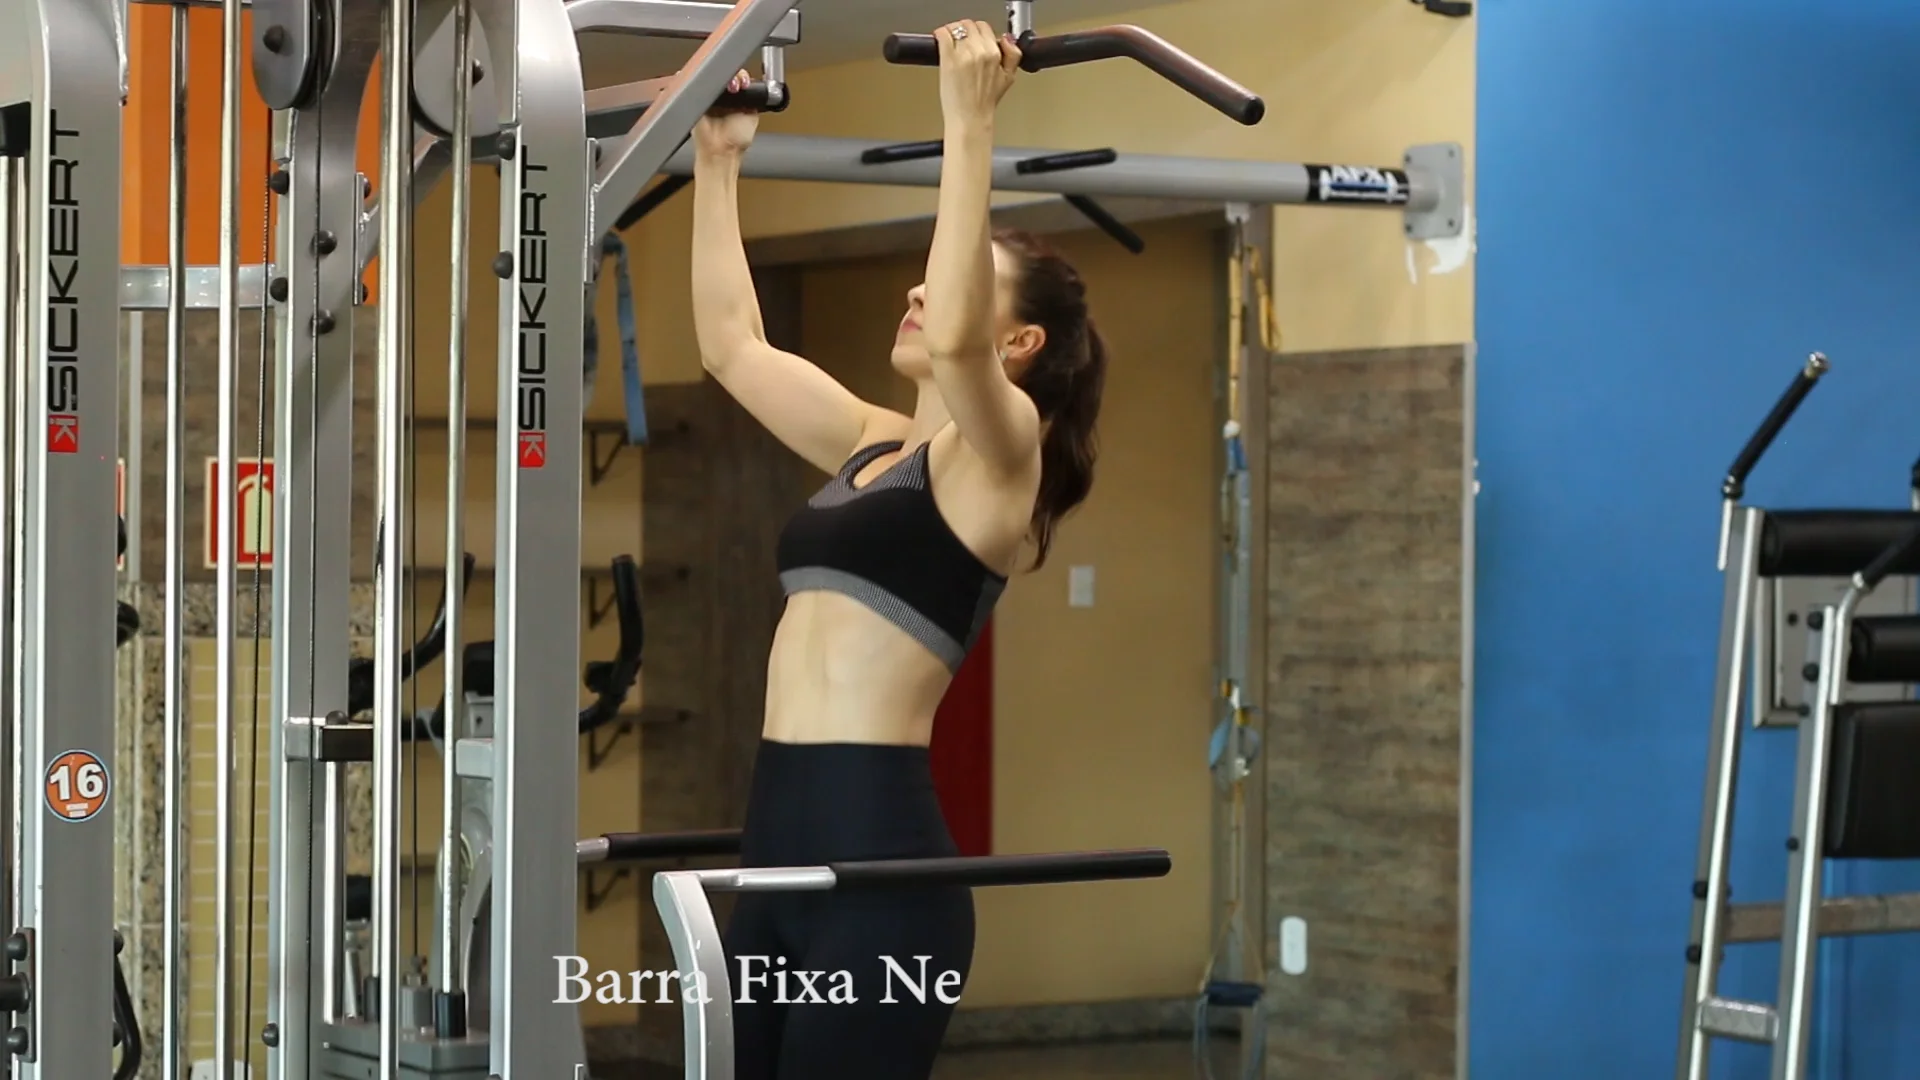 Barra Fixa Neutra Graviton (2) on Vimeo